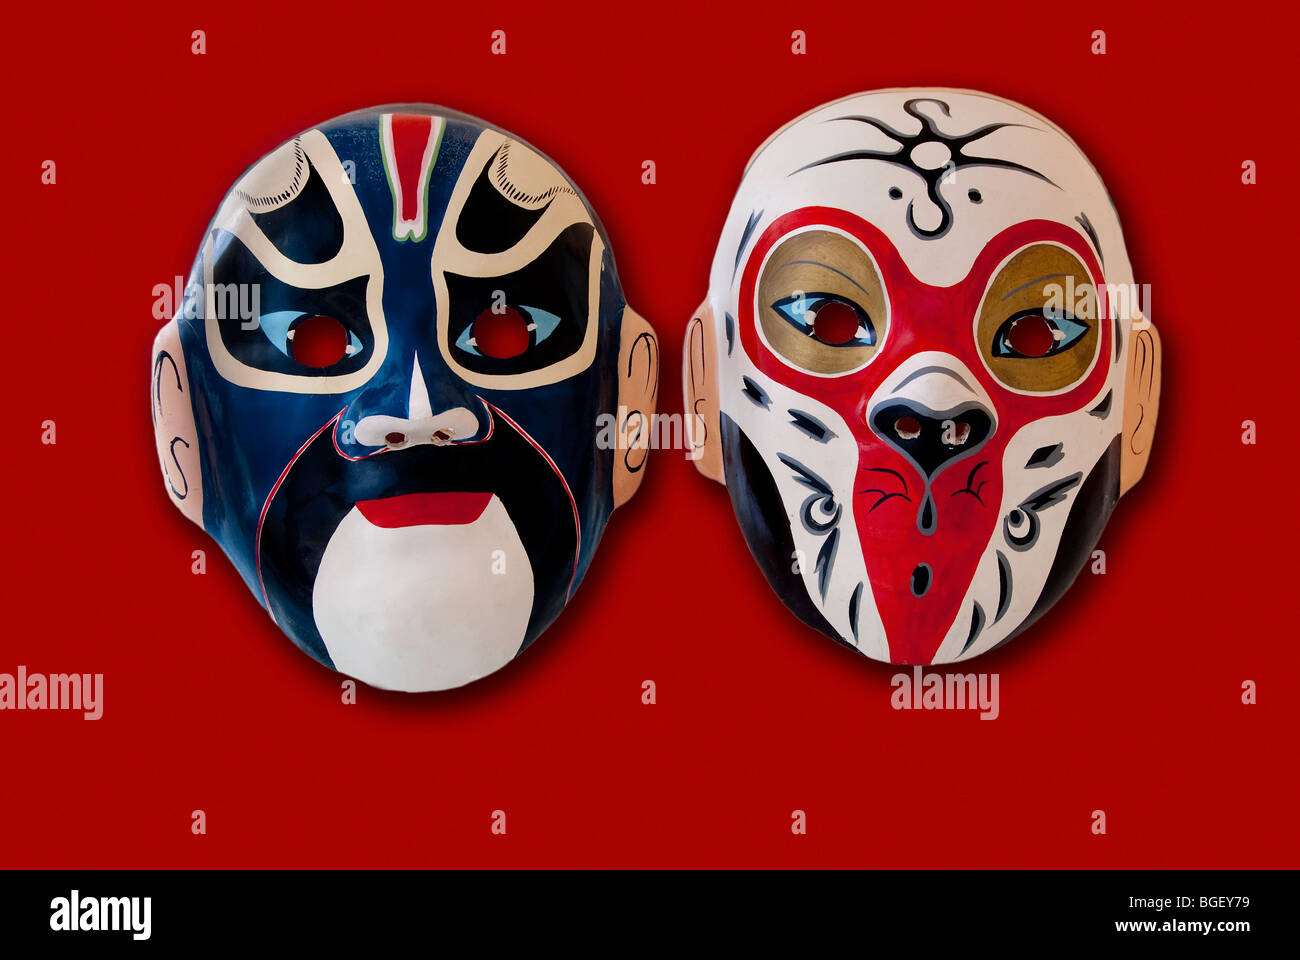 Las máscaras de la ópera china sobre fondo rojo, Foto de estudio Foto de stock